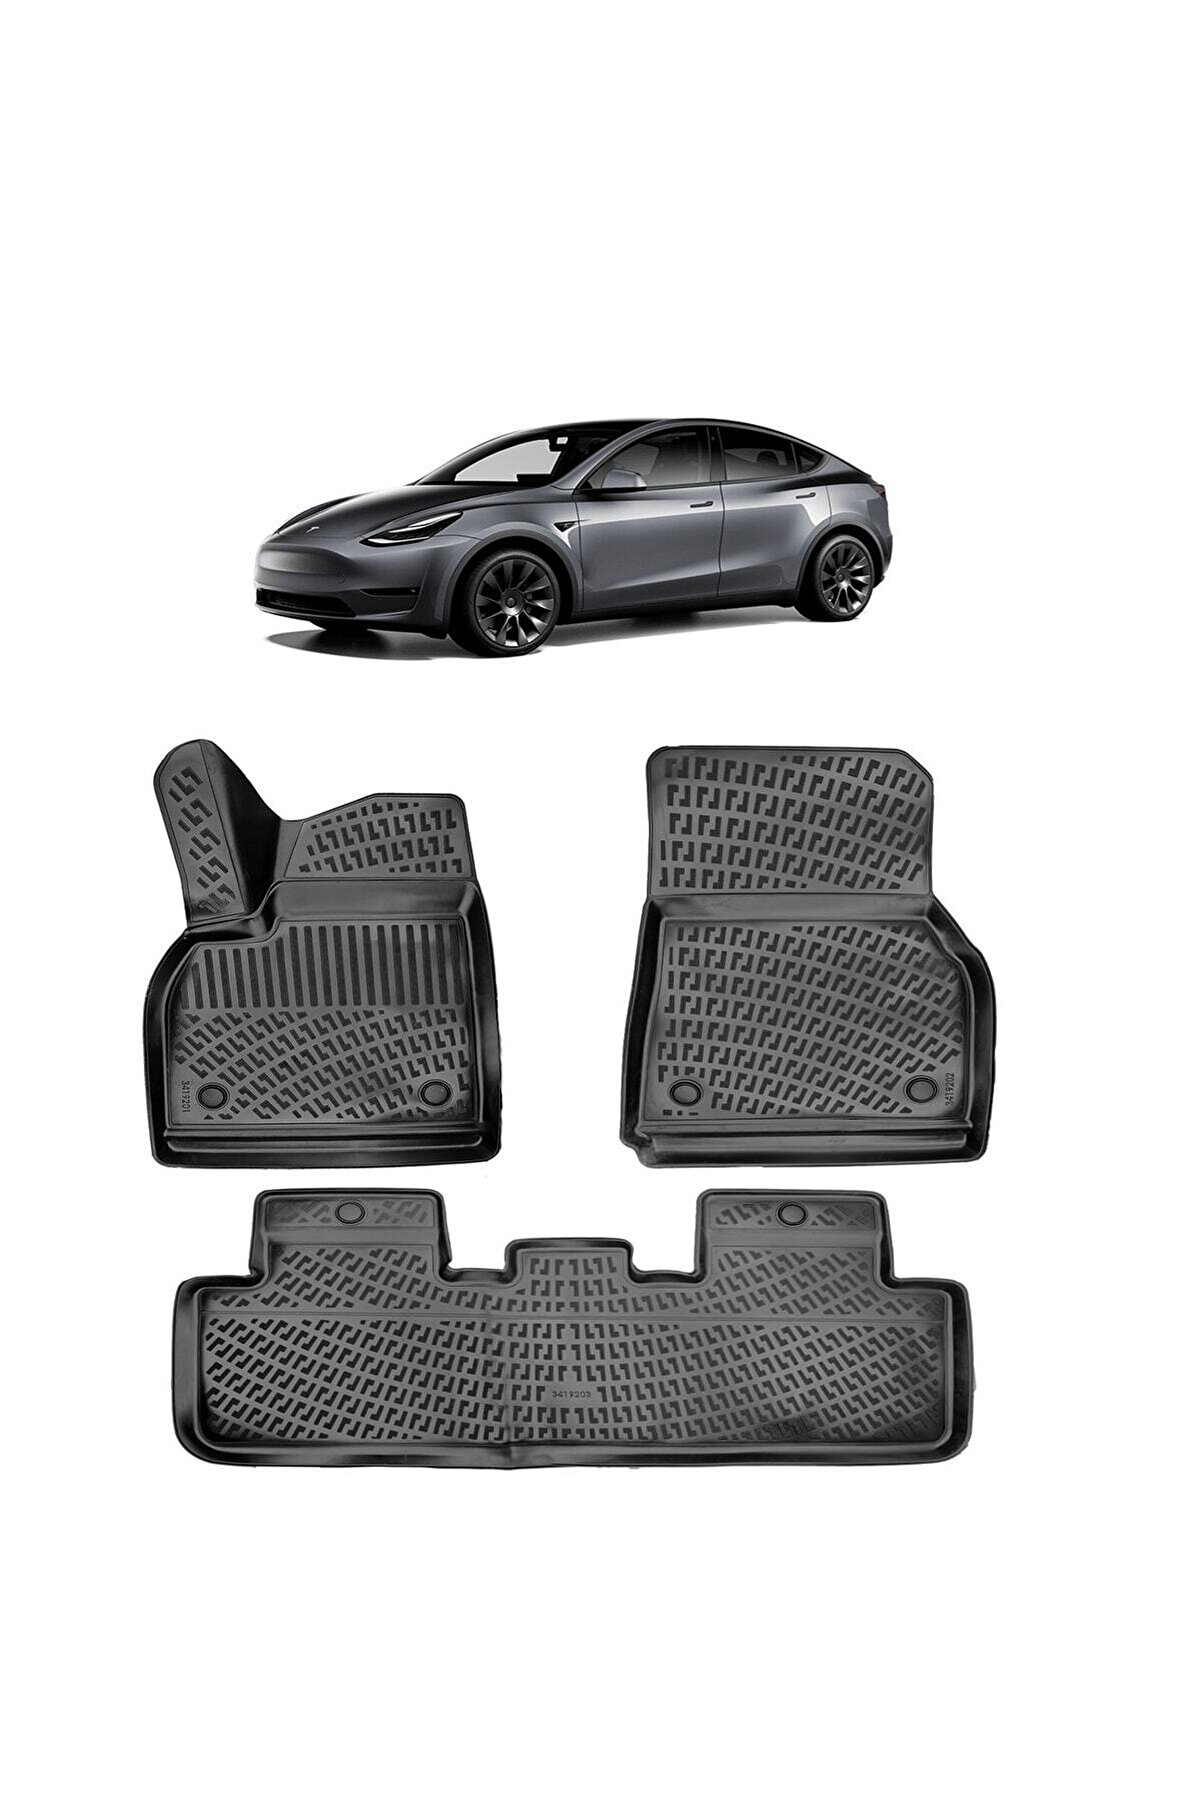 Rizline Tesla Model Y 2019 Sonrası 3D Havuzlu Paspas Fiyat ve